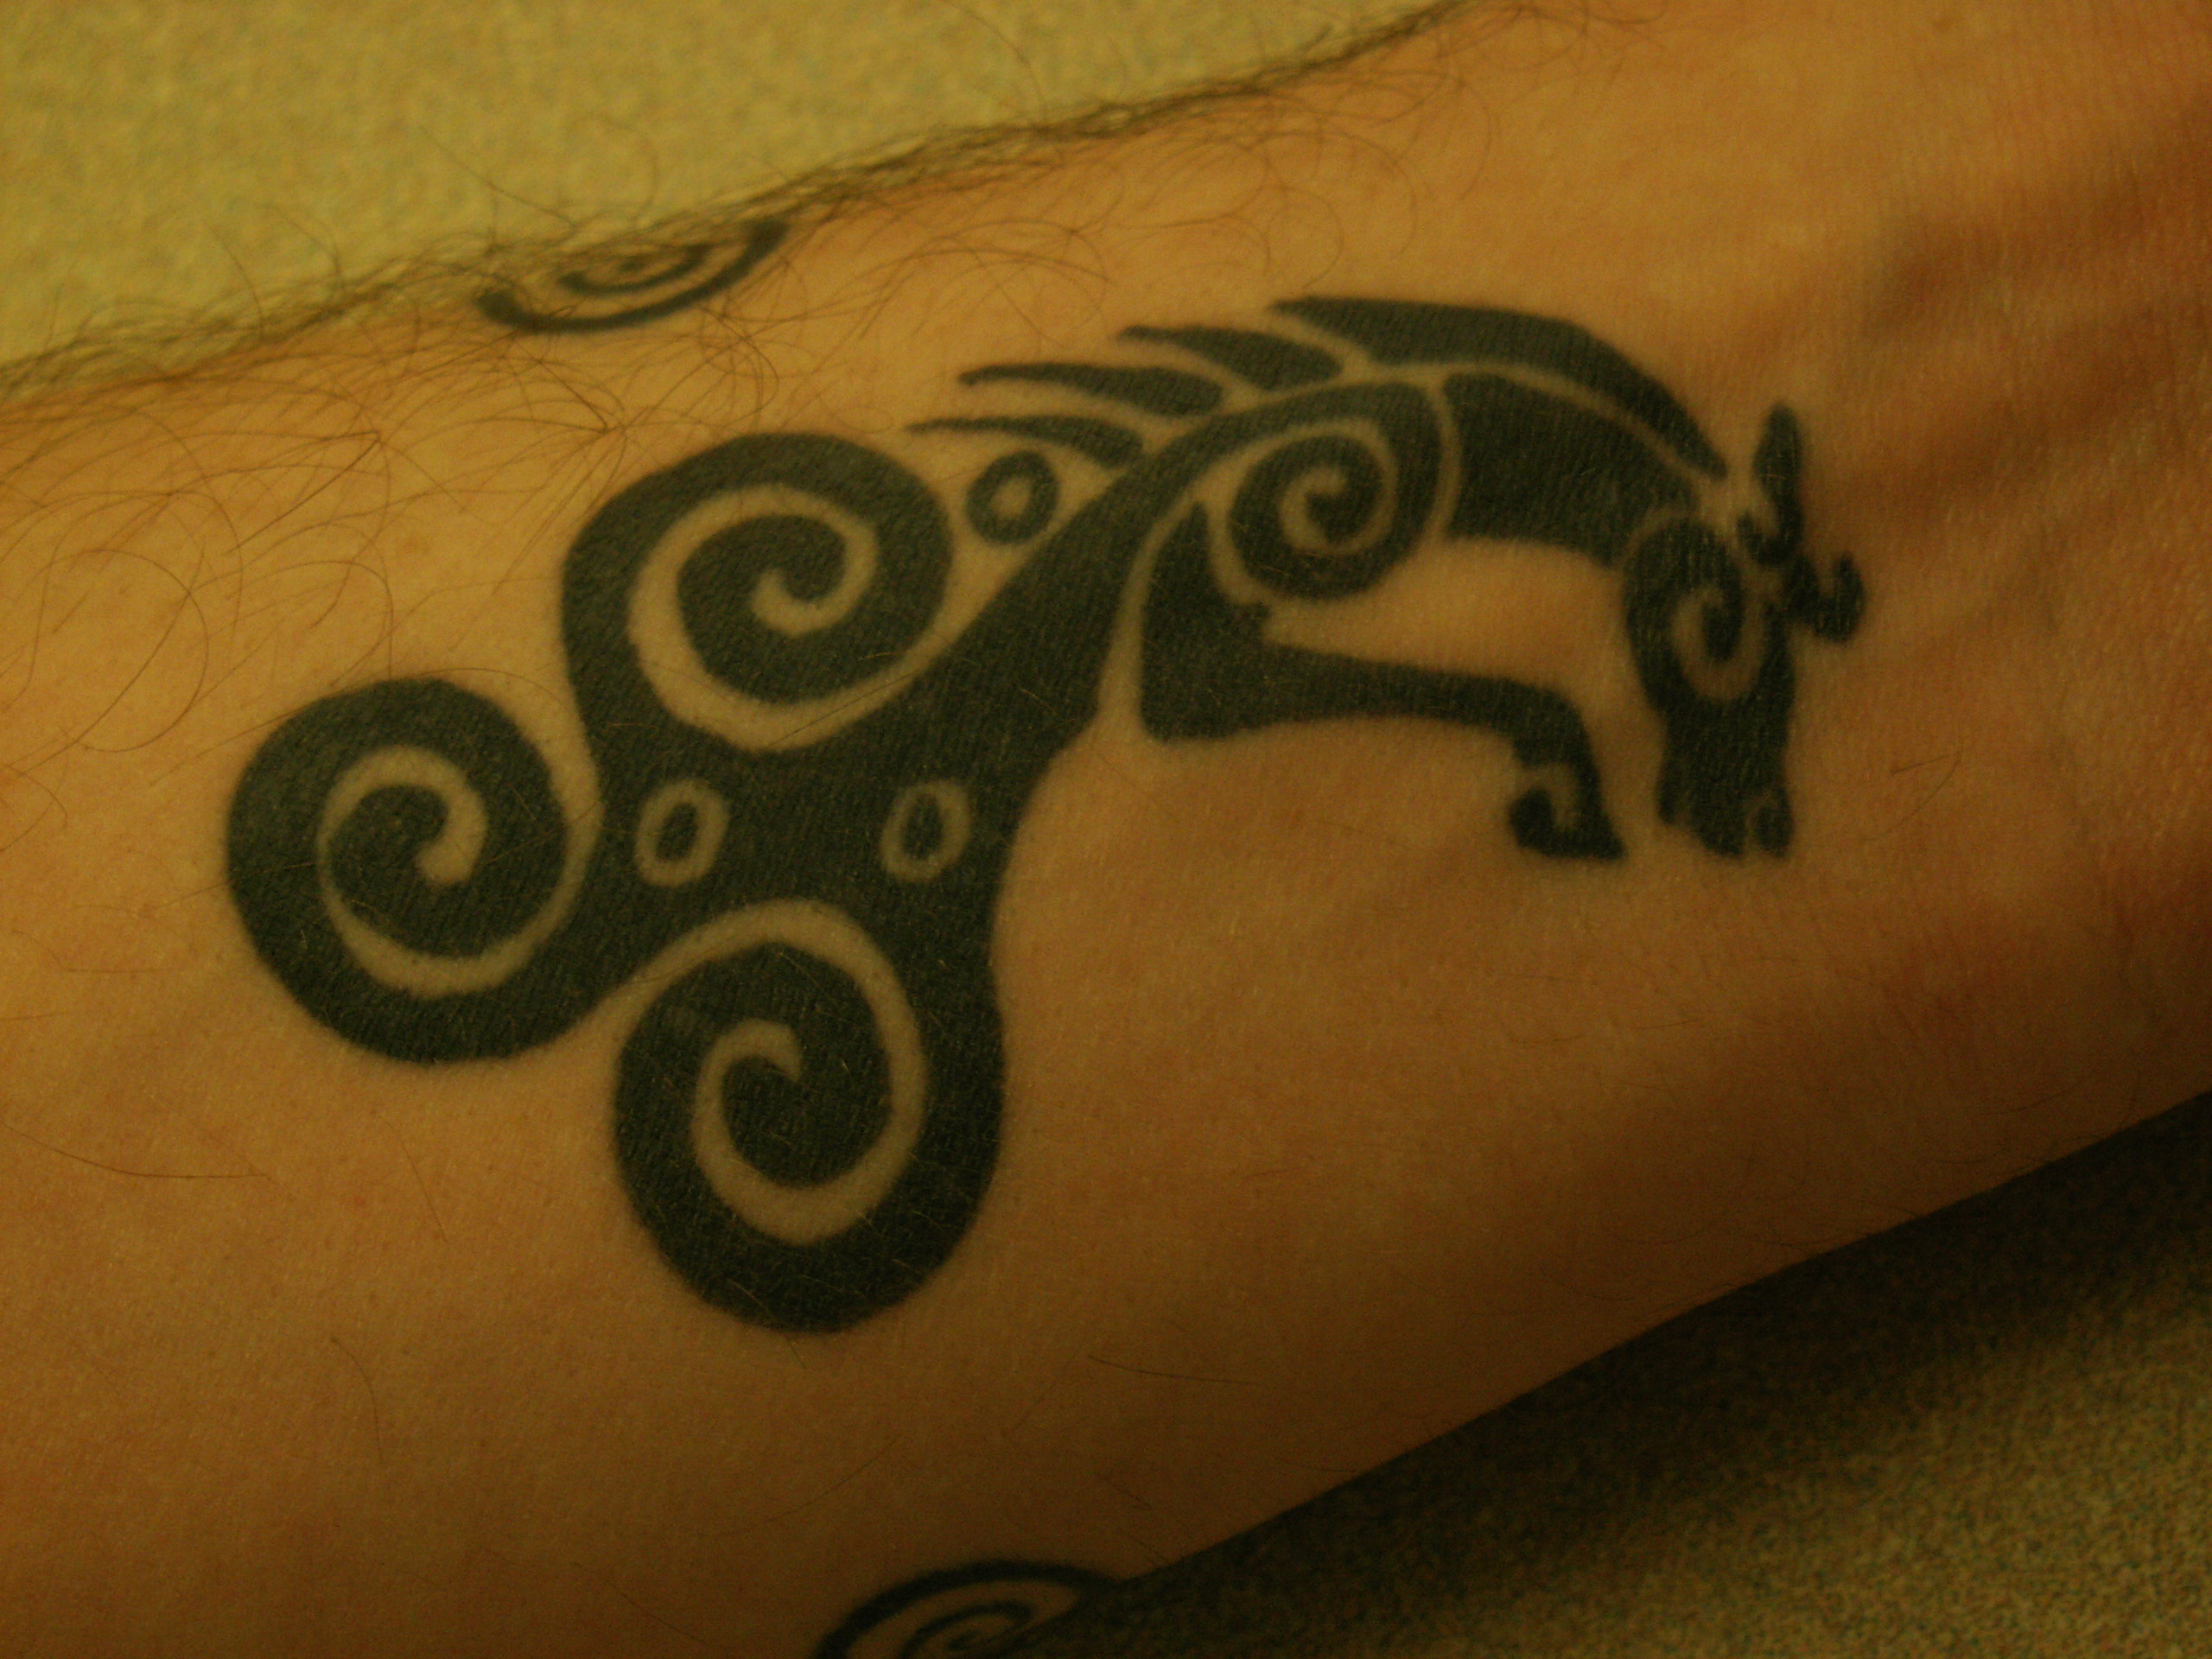 Celtic motive wrist tattoo design for men